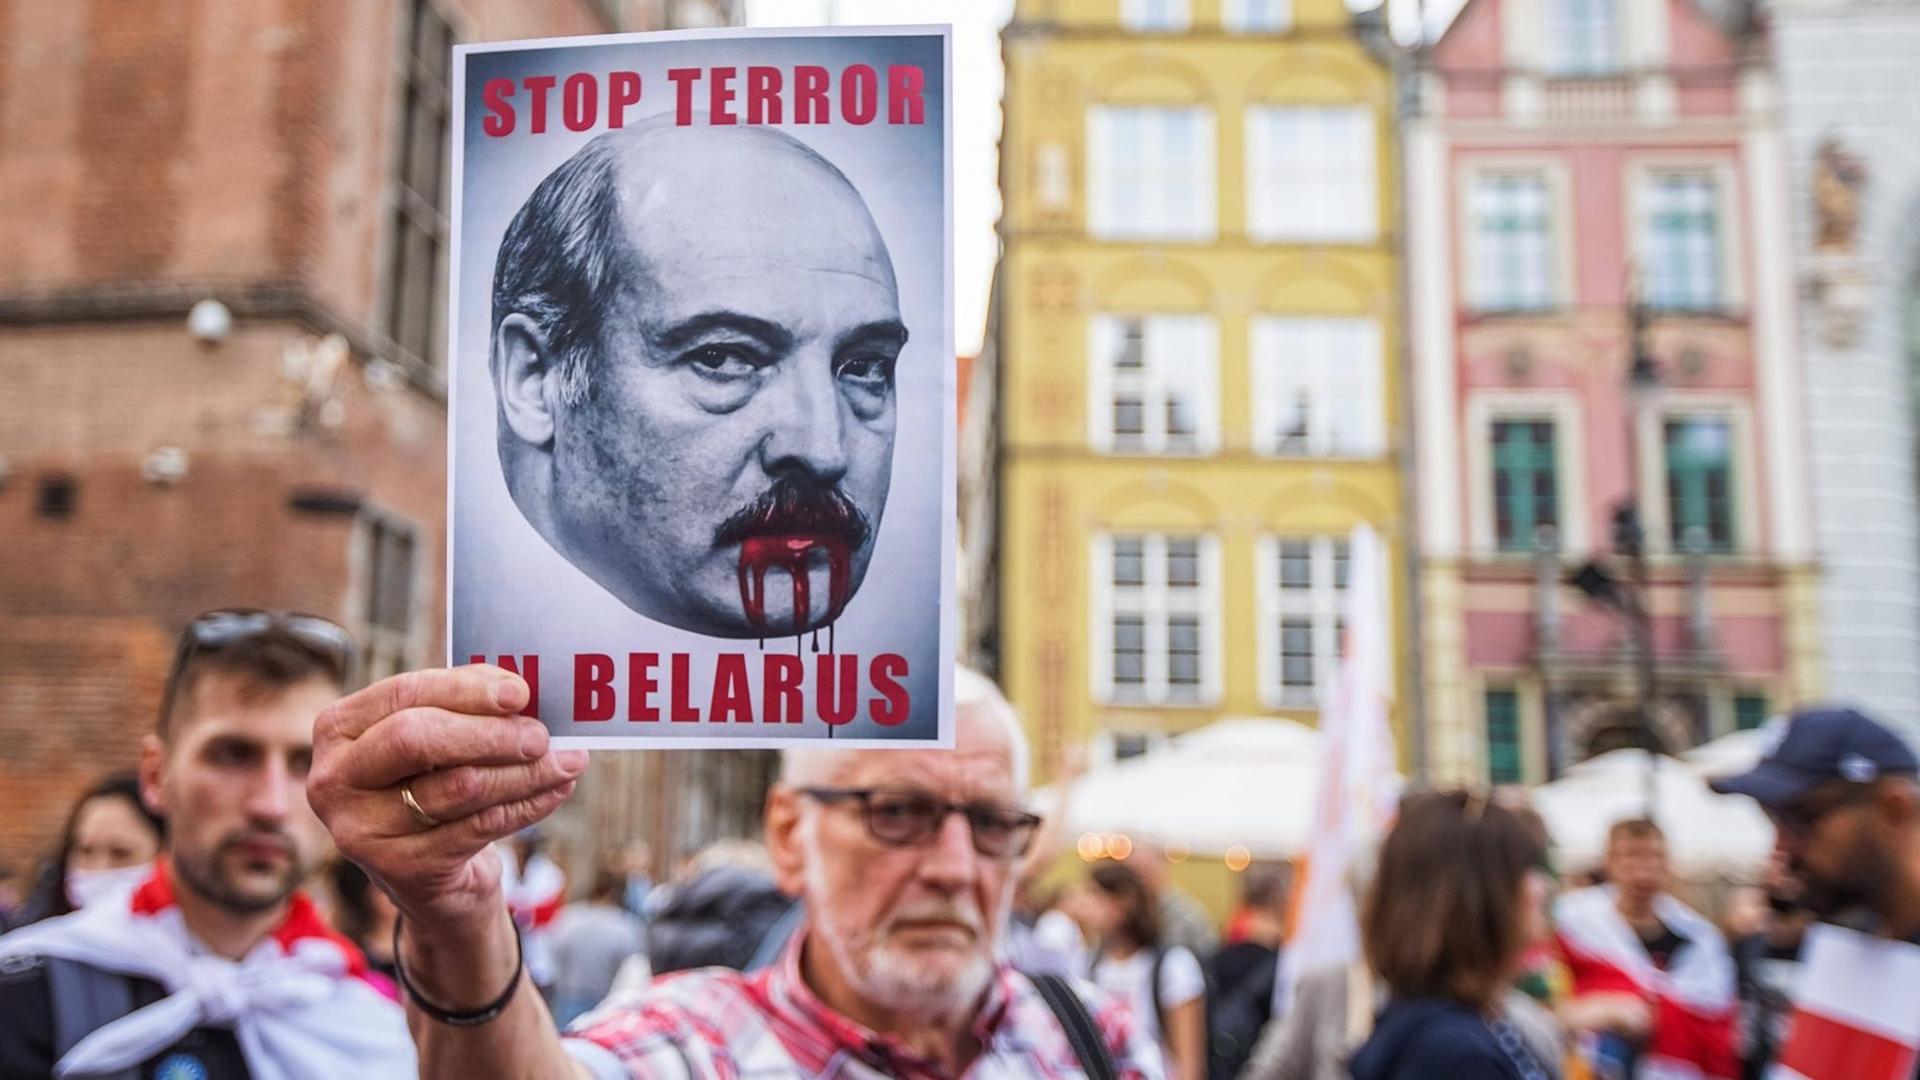 "Solidarity with Belarus March" in Gdansk. Ein Mann hält ein "Stop Terror in Belarus" Schild in die Höhe, 2021.